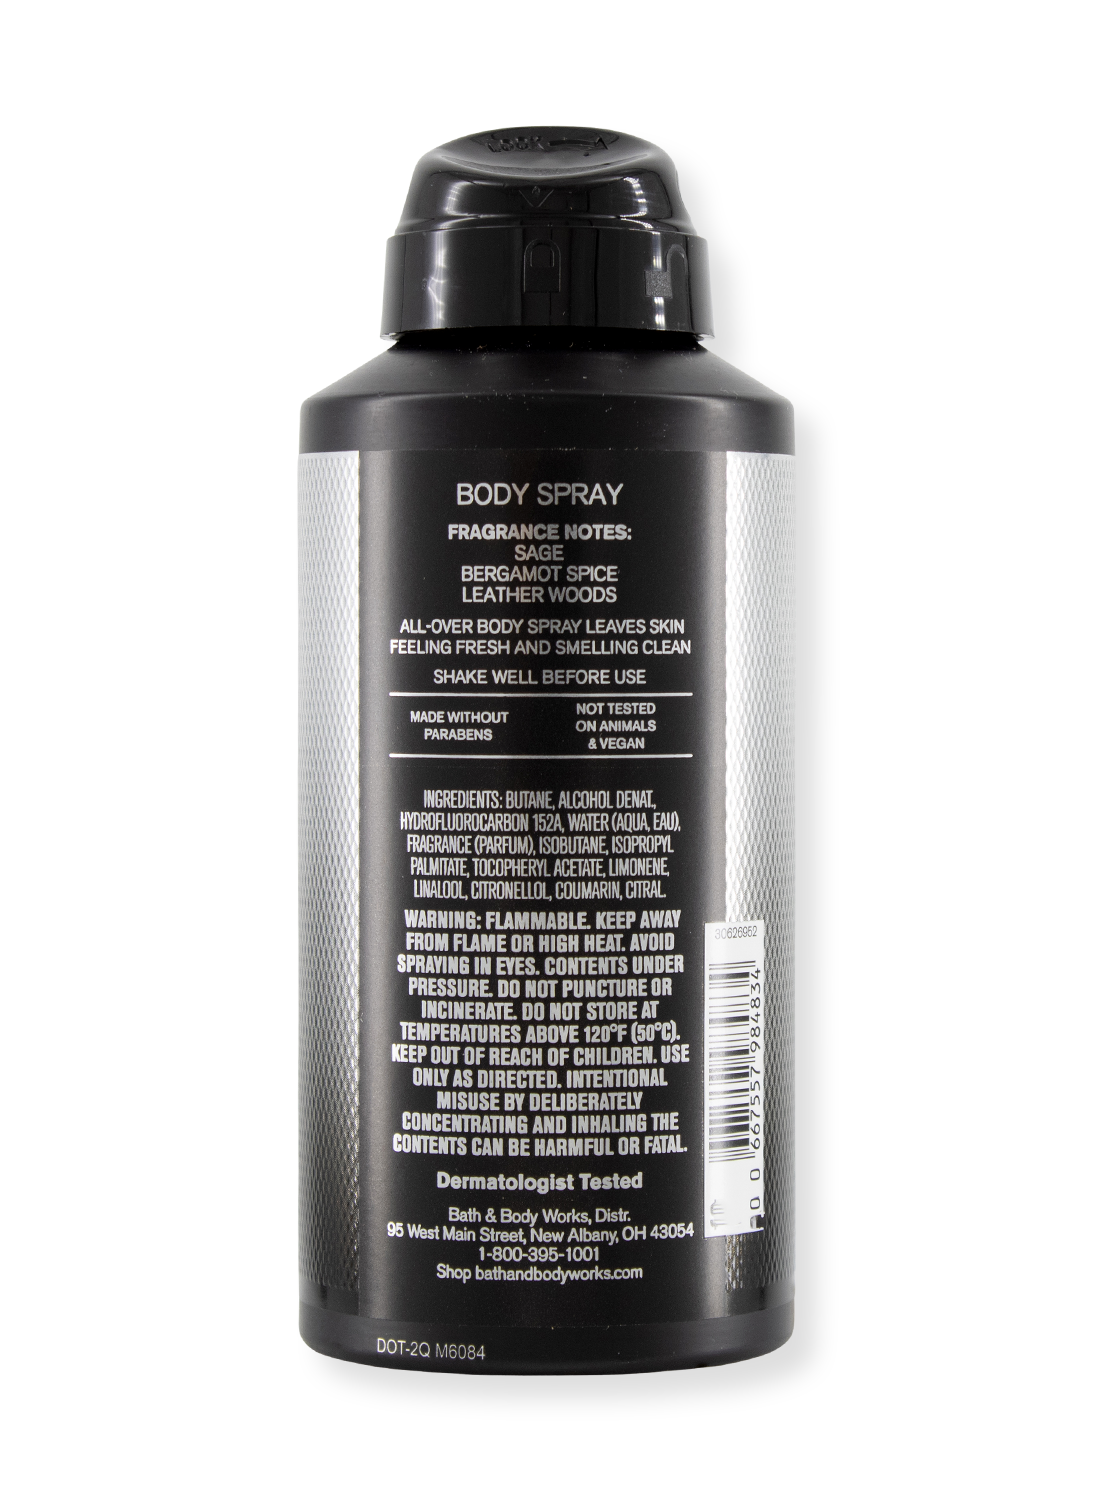 Body Spray - Graphite - voor mannen - 104G